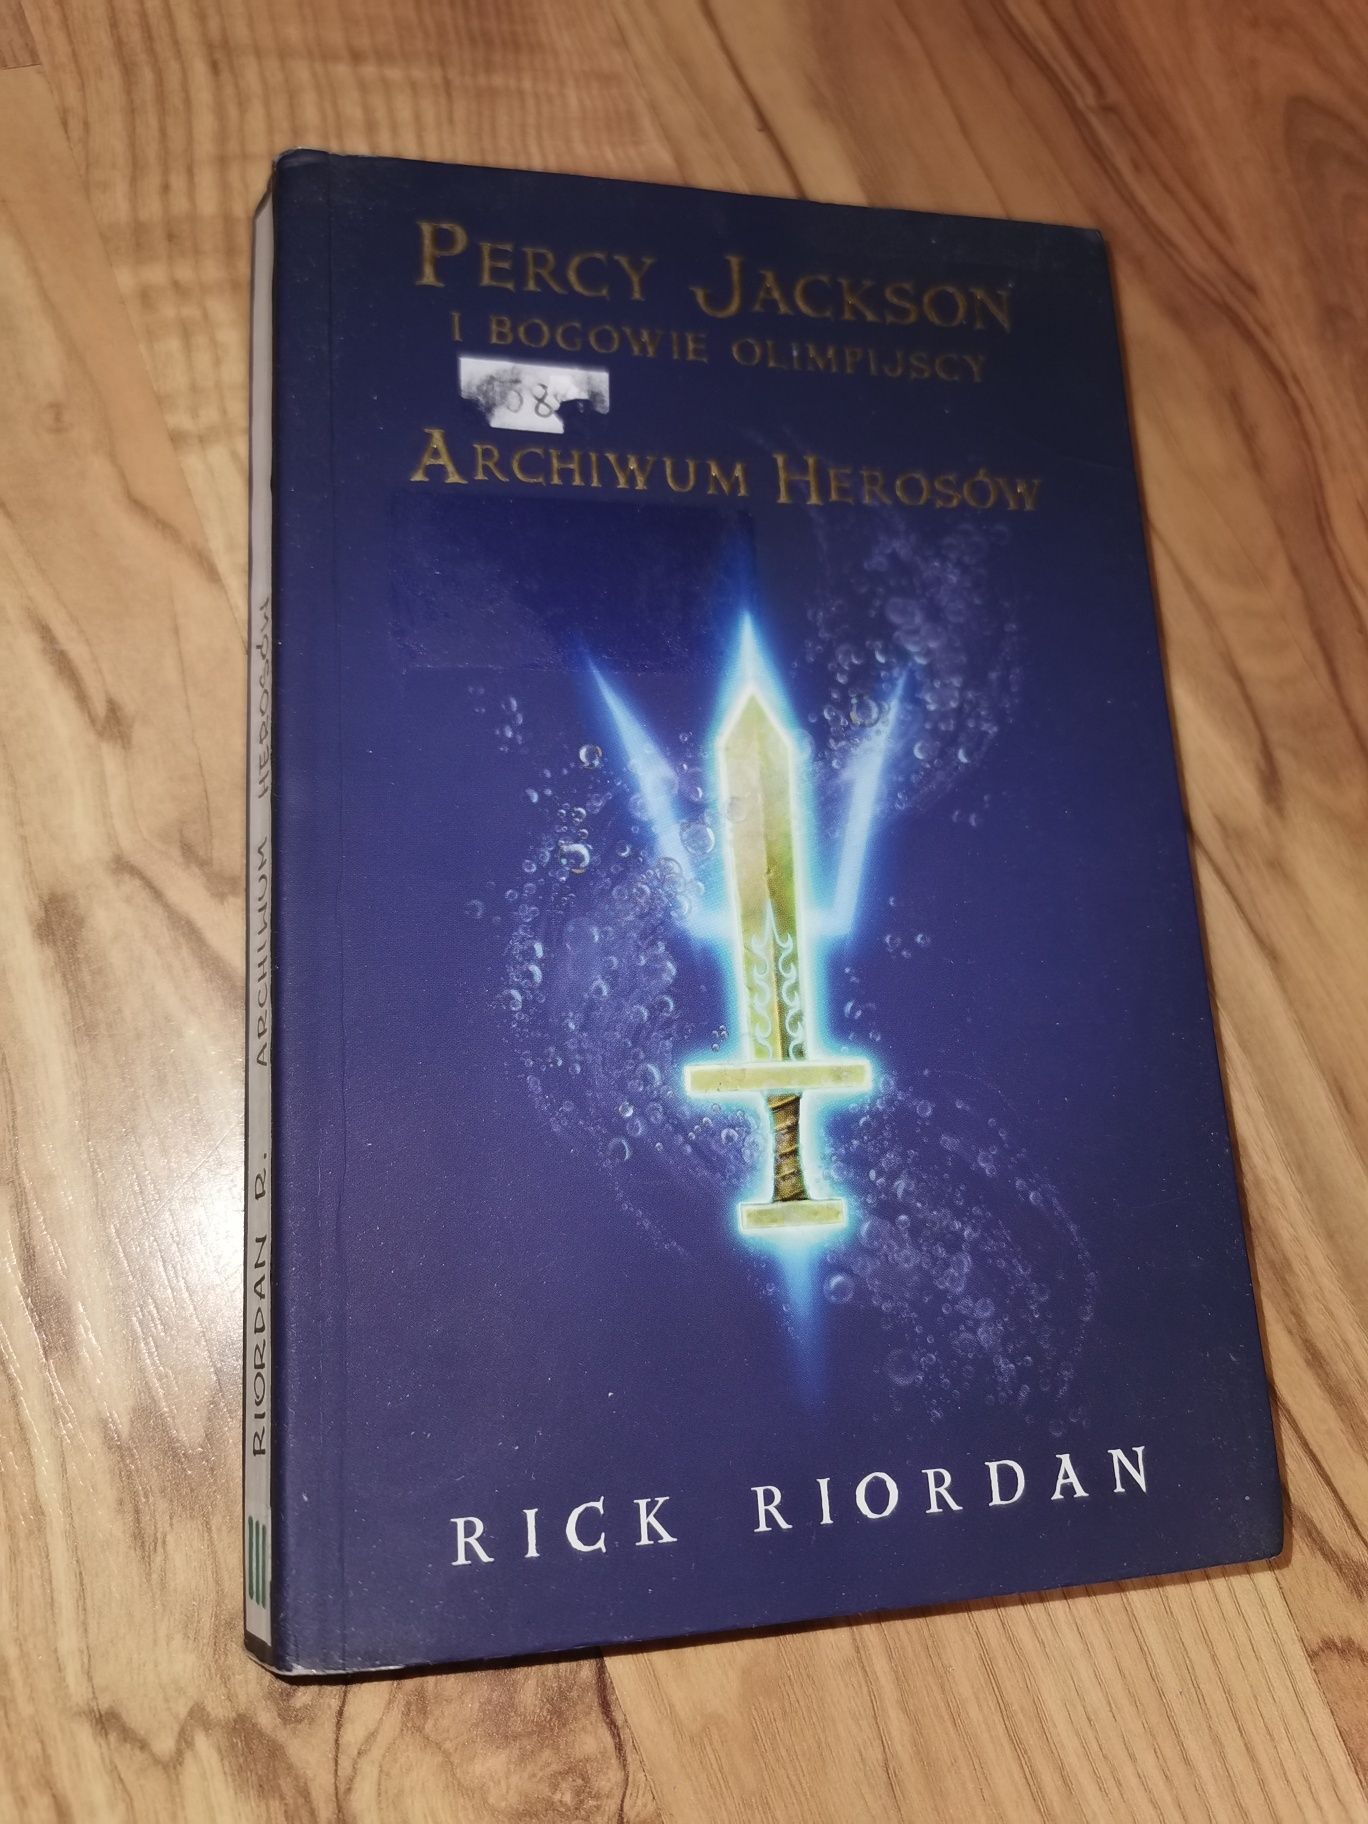 Archiwum herosów. Percy Jackson i bogowie olimpijscy - Rick Riordan